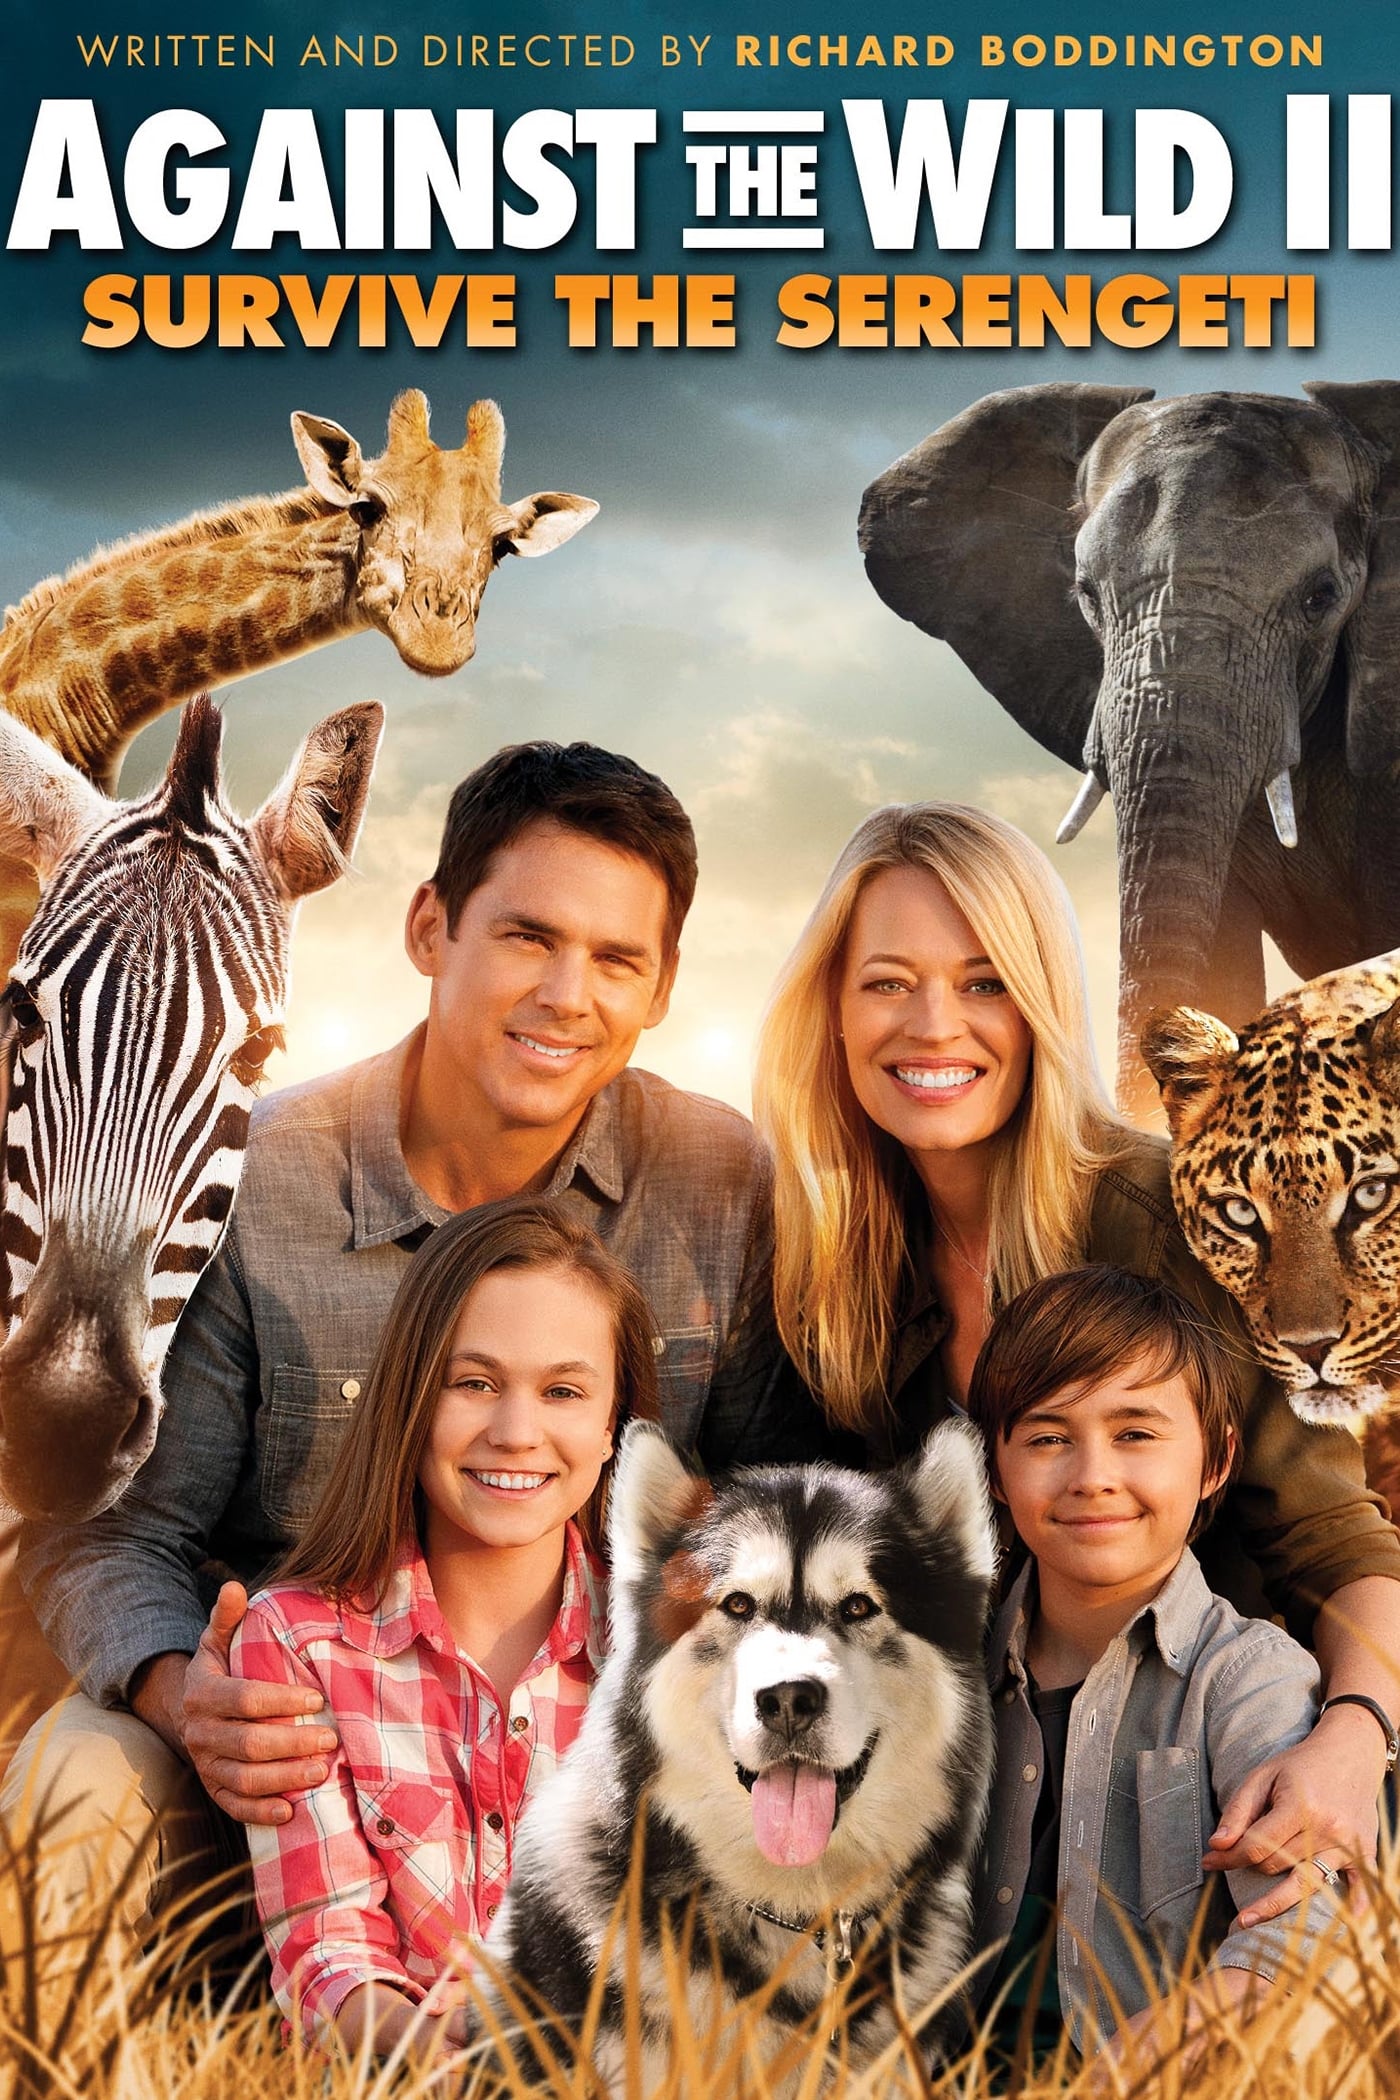 Kleine Helden, große Wildnis 2 - Abenteuer Serengeti (2016)